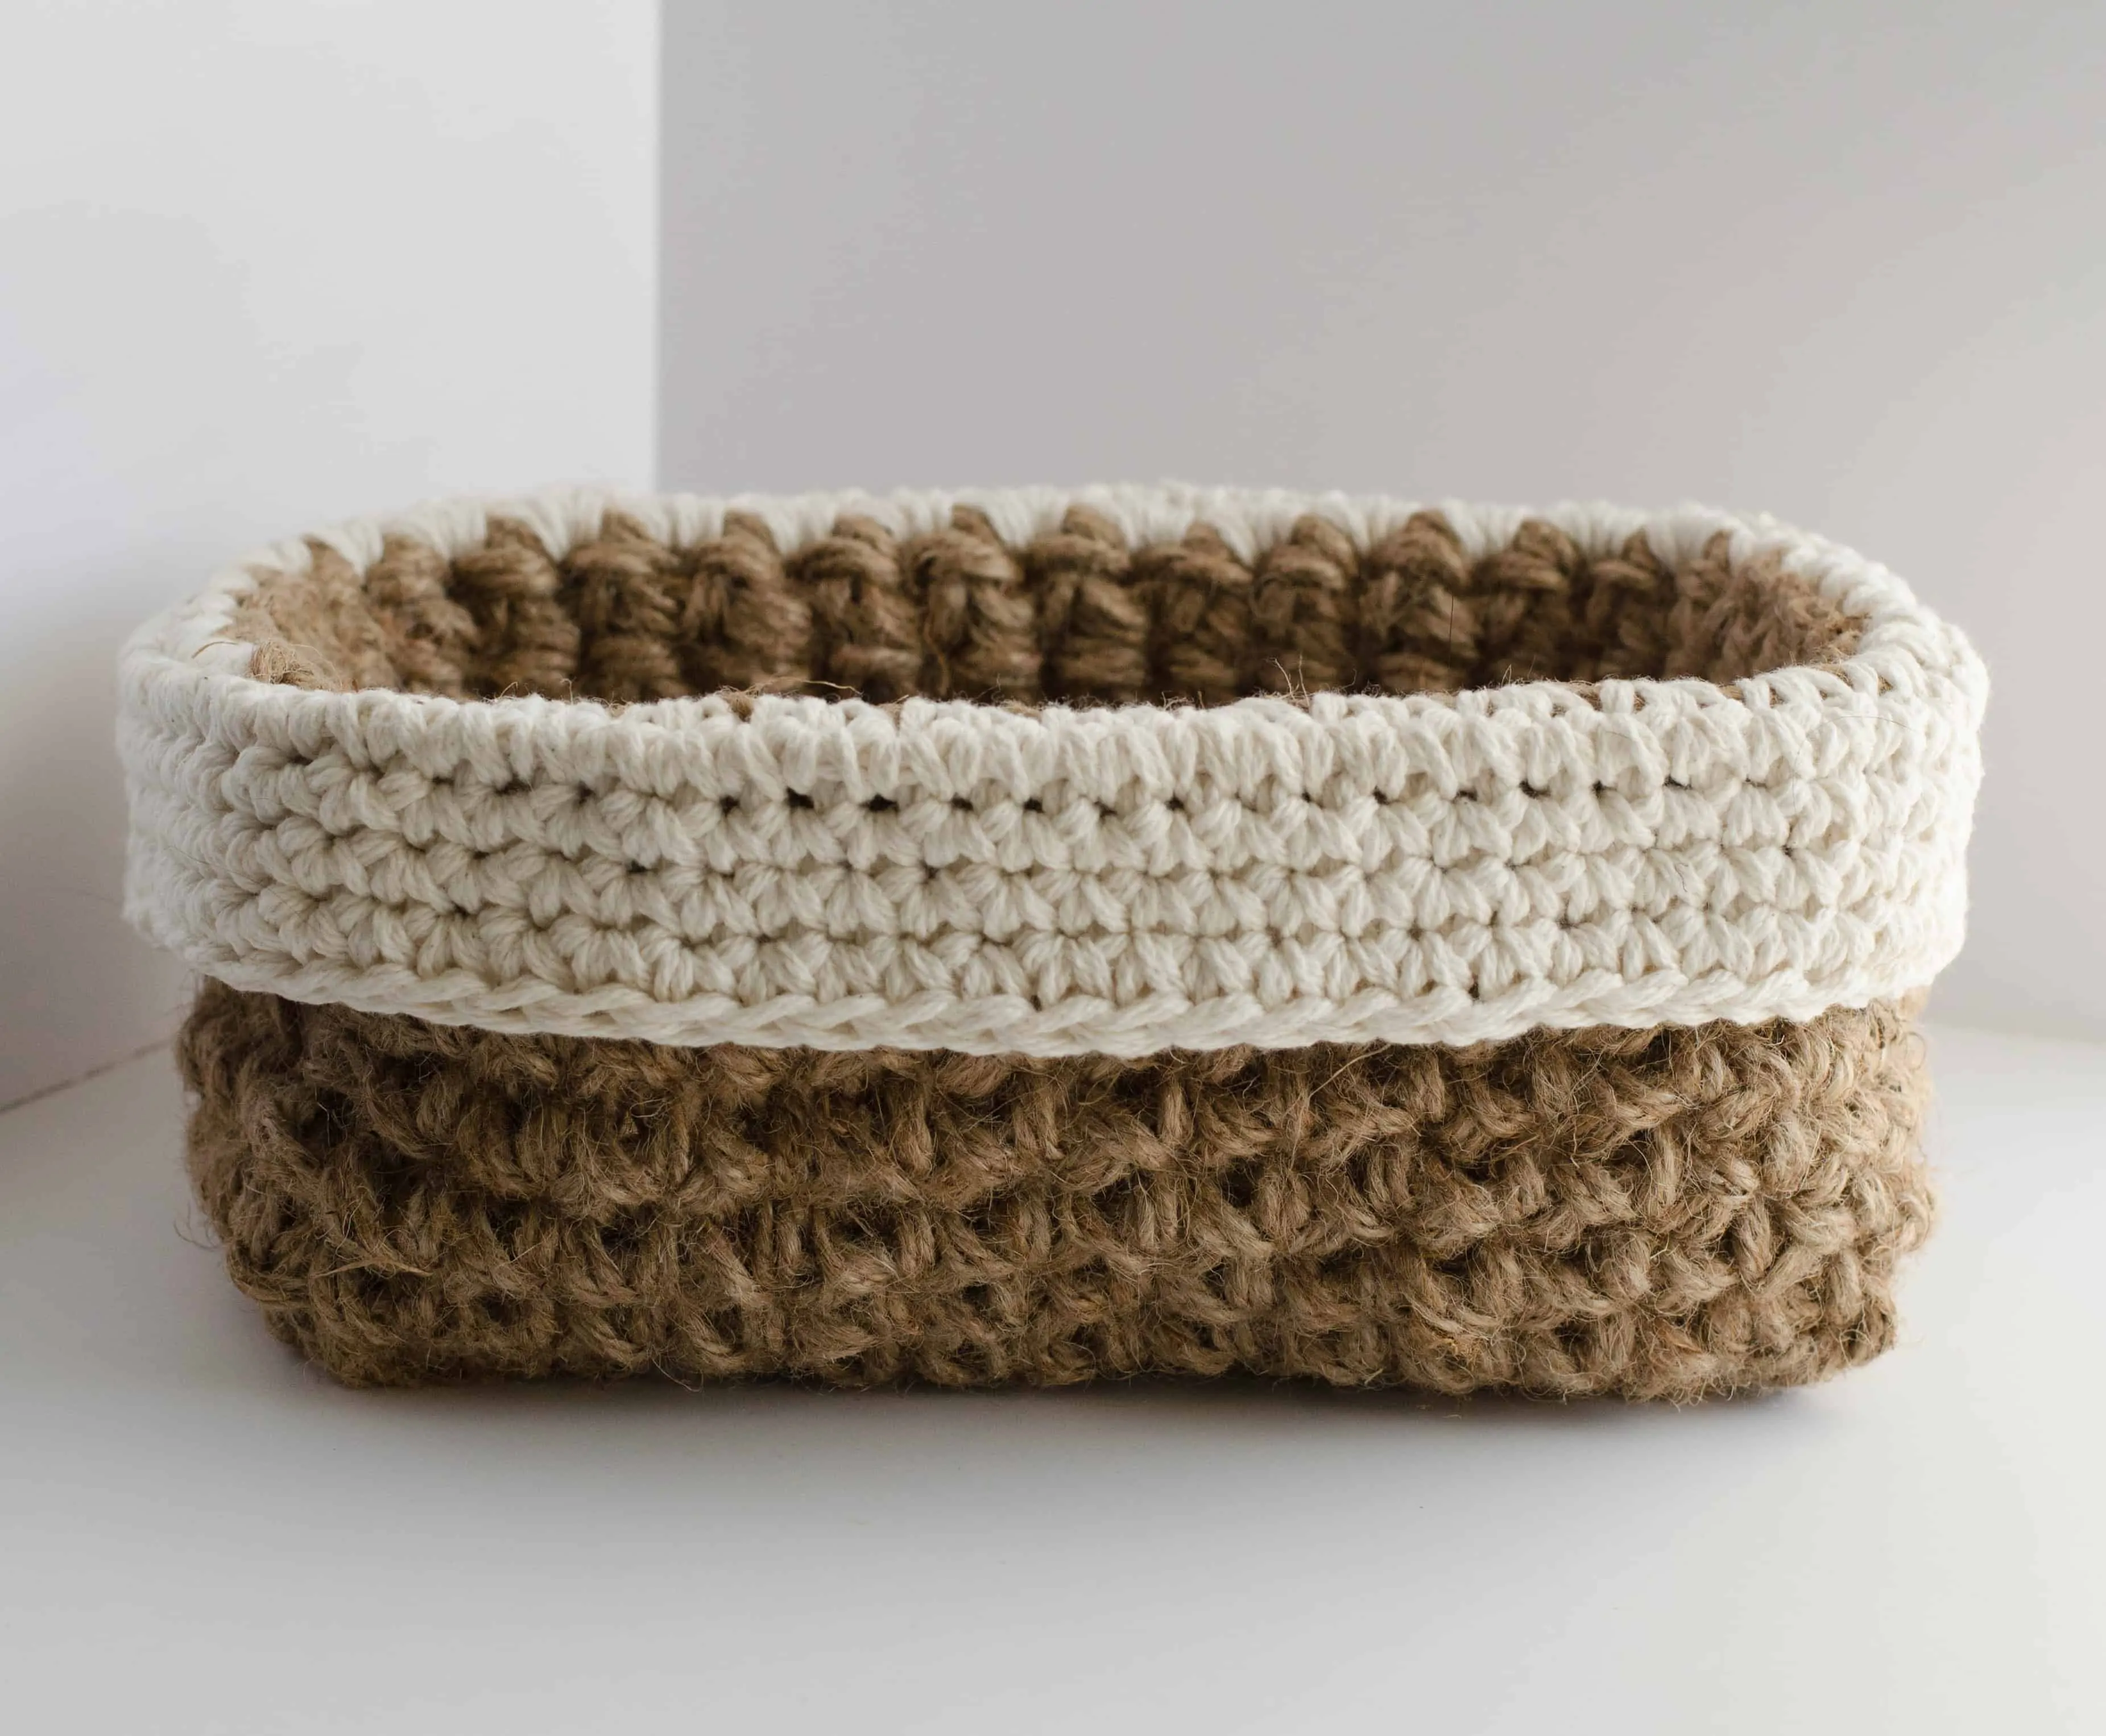 Crochet Jute Basket Pattern